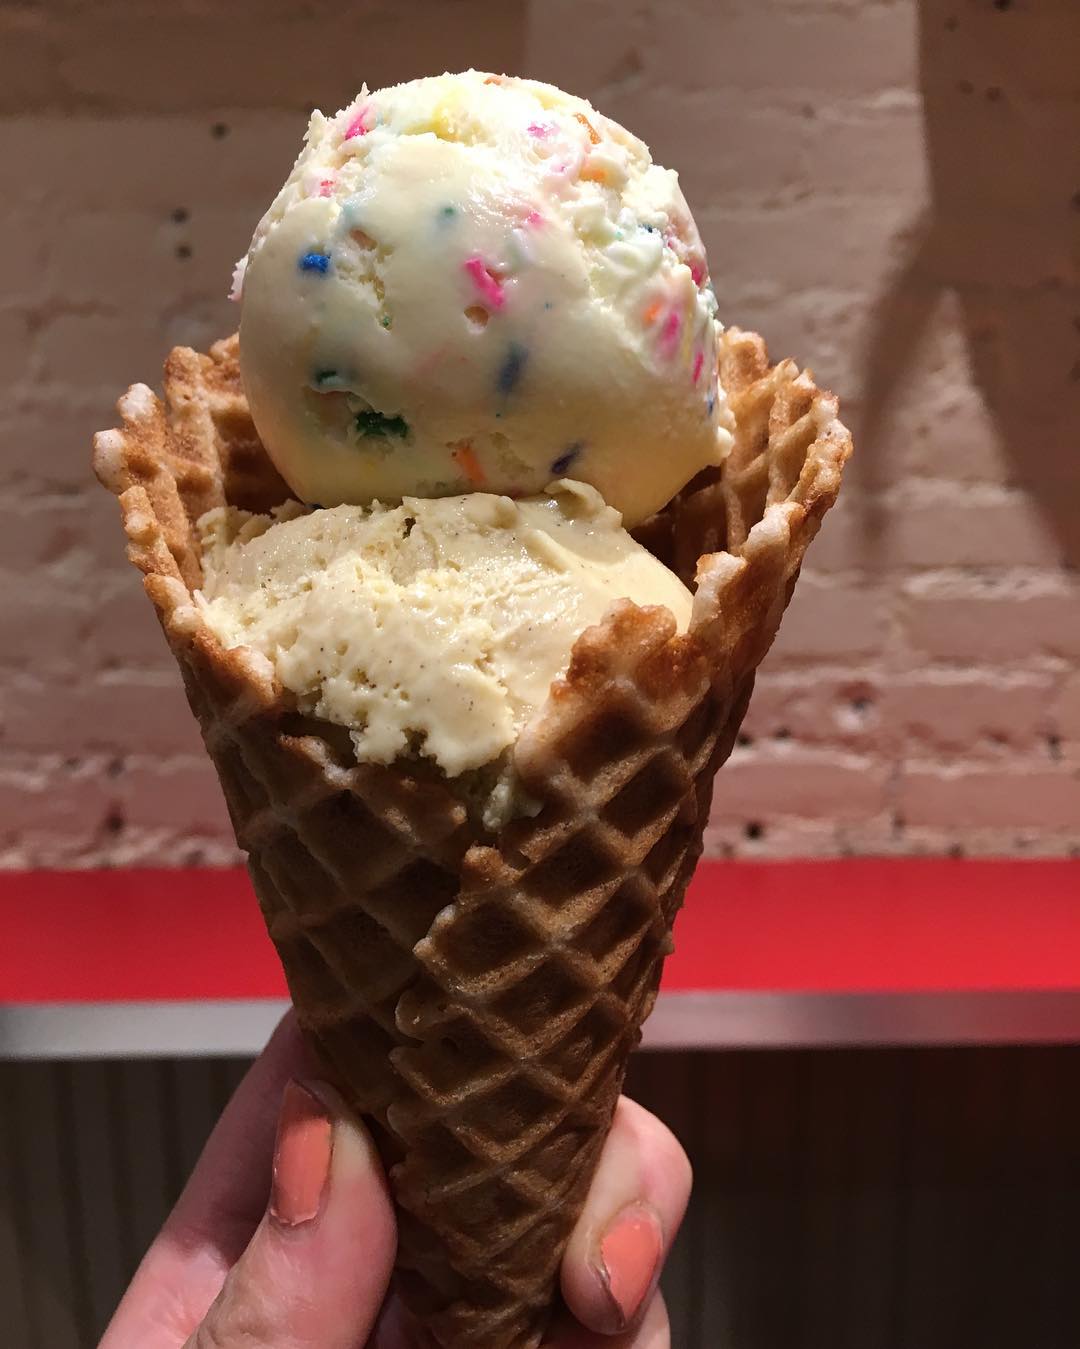 冰淇淋冰激凌霜淇淋……图片all from instagram希望不要二改商用